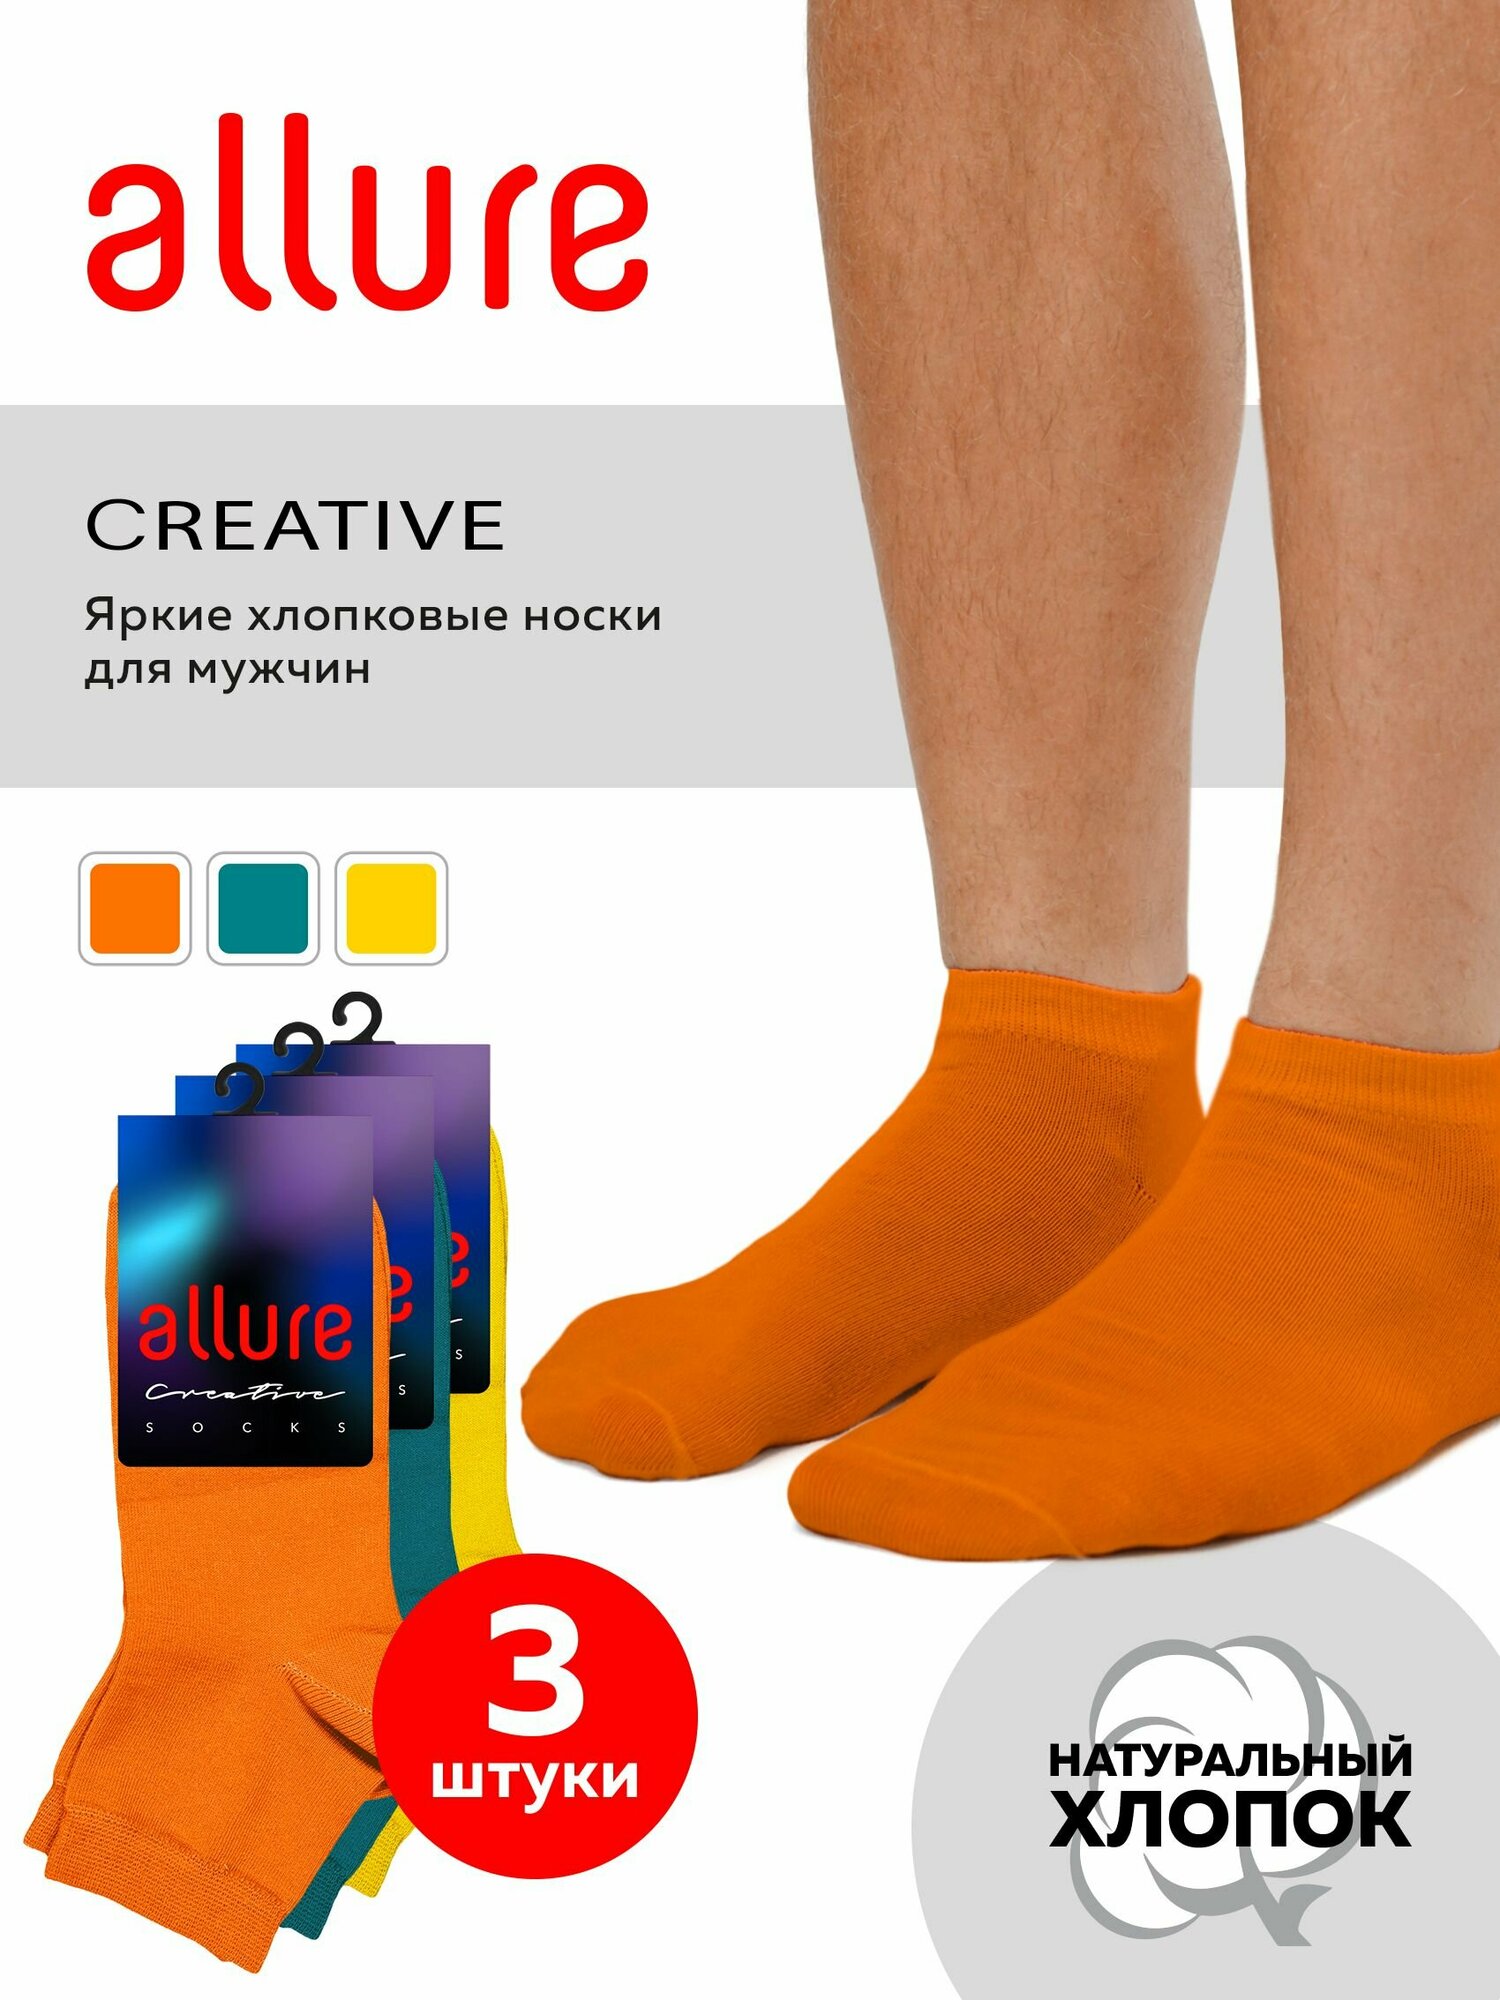 Носки ALLURE цветные носки, 3 пары, размер 45/47, желтый, оранжевый, бирюзовый